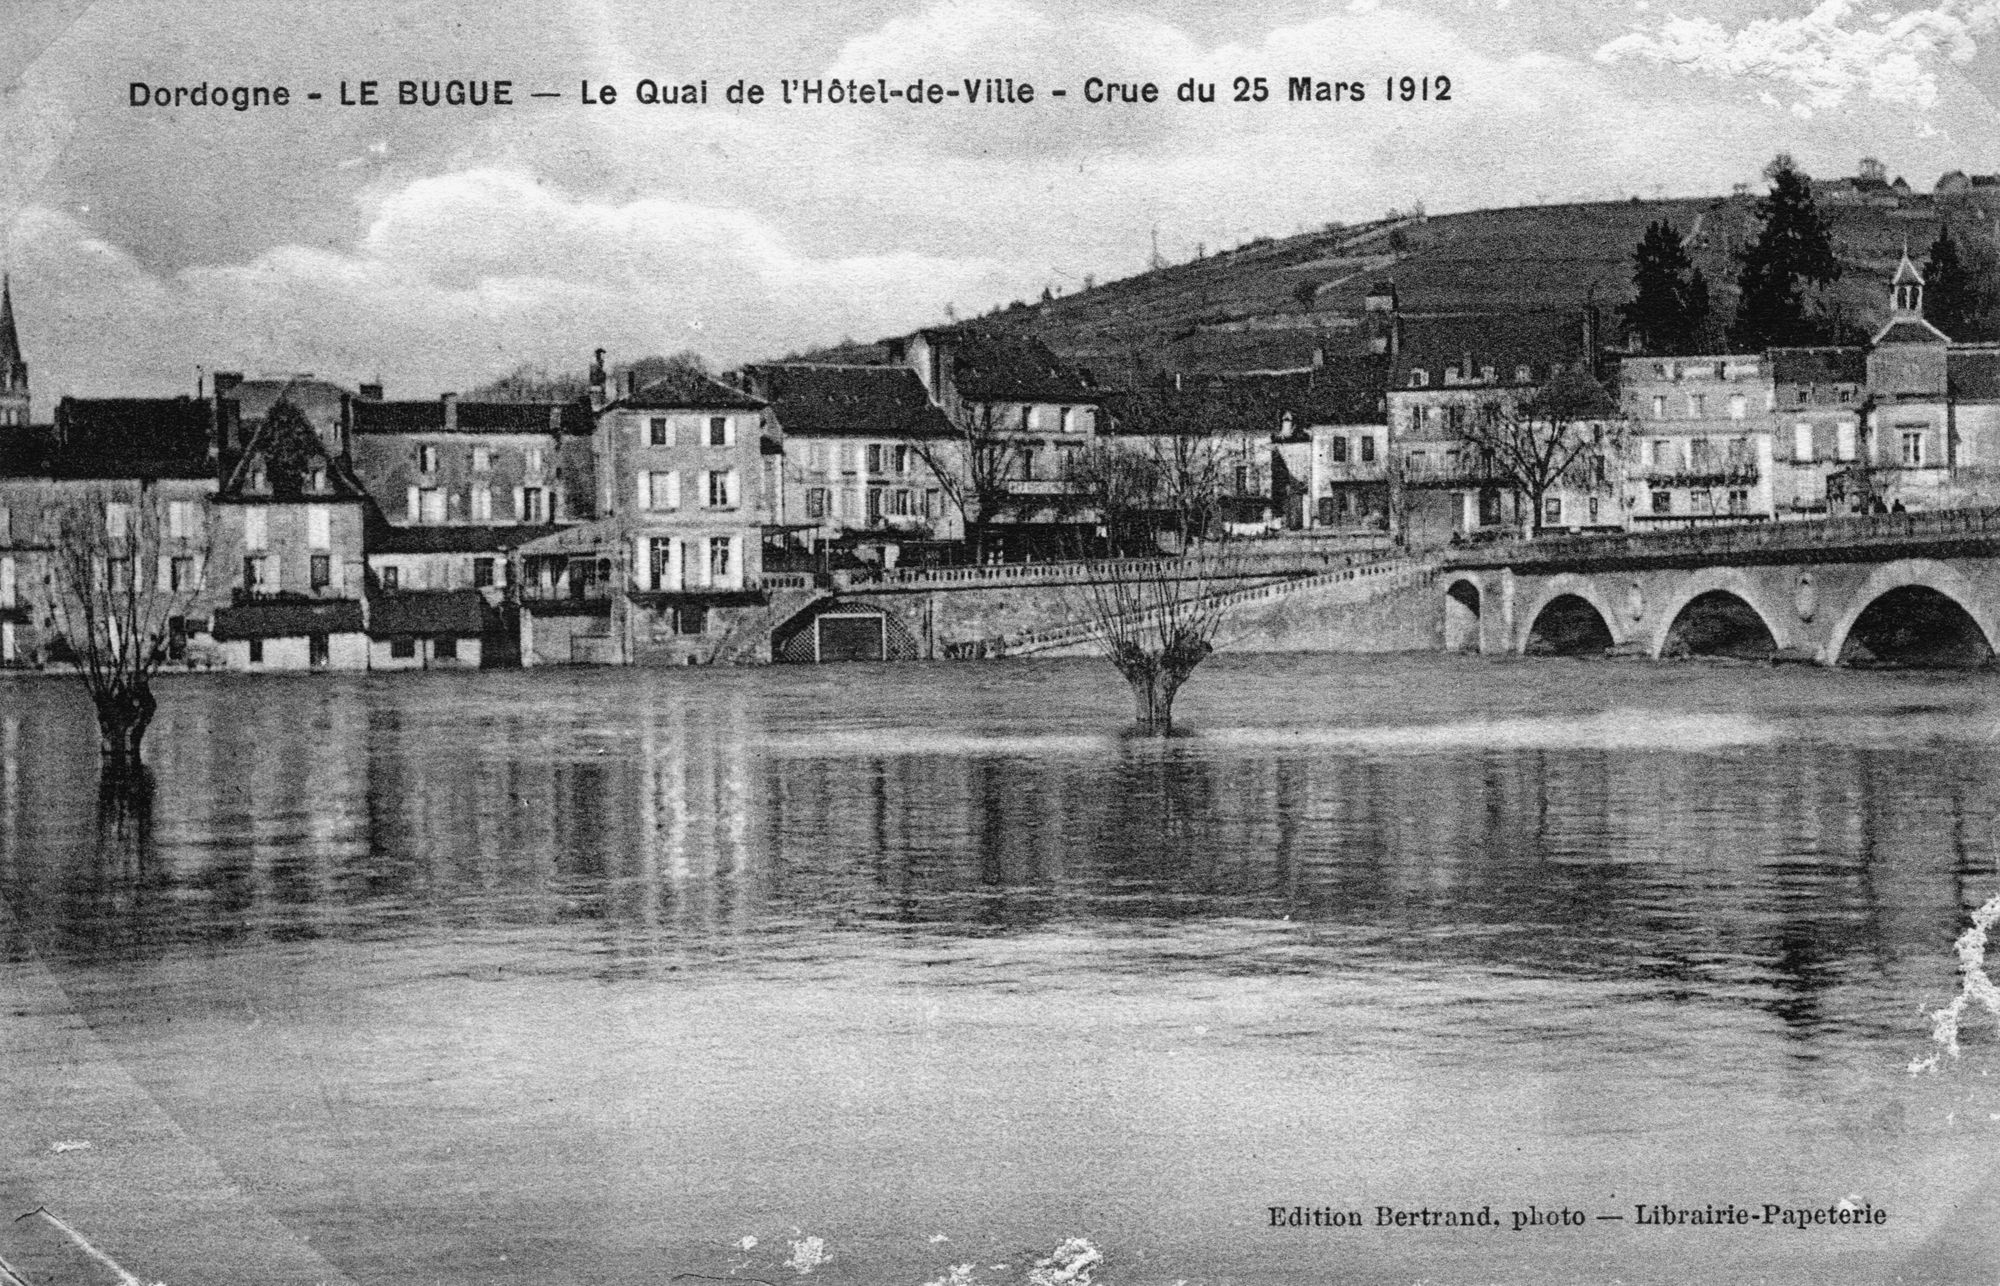 Dordogne – LE BUGUE – Le Quai de l’Hôtel de ville – Crue de la Vézère 25 mars 1912
Postcard – Edition Bertrand, photo – Librairie Papeterie